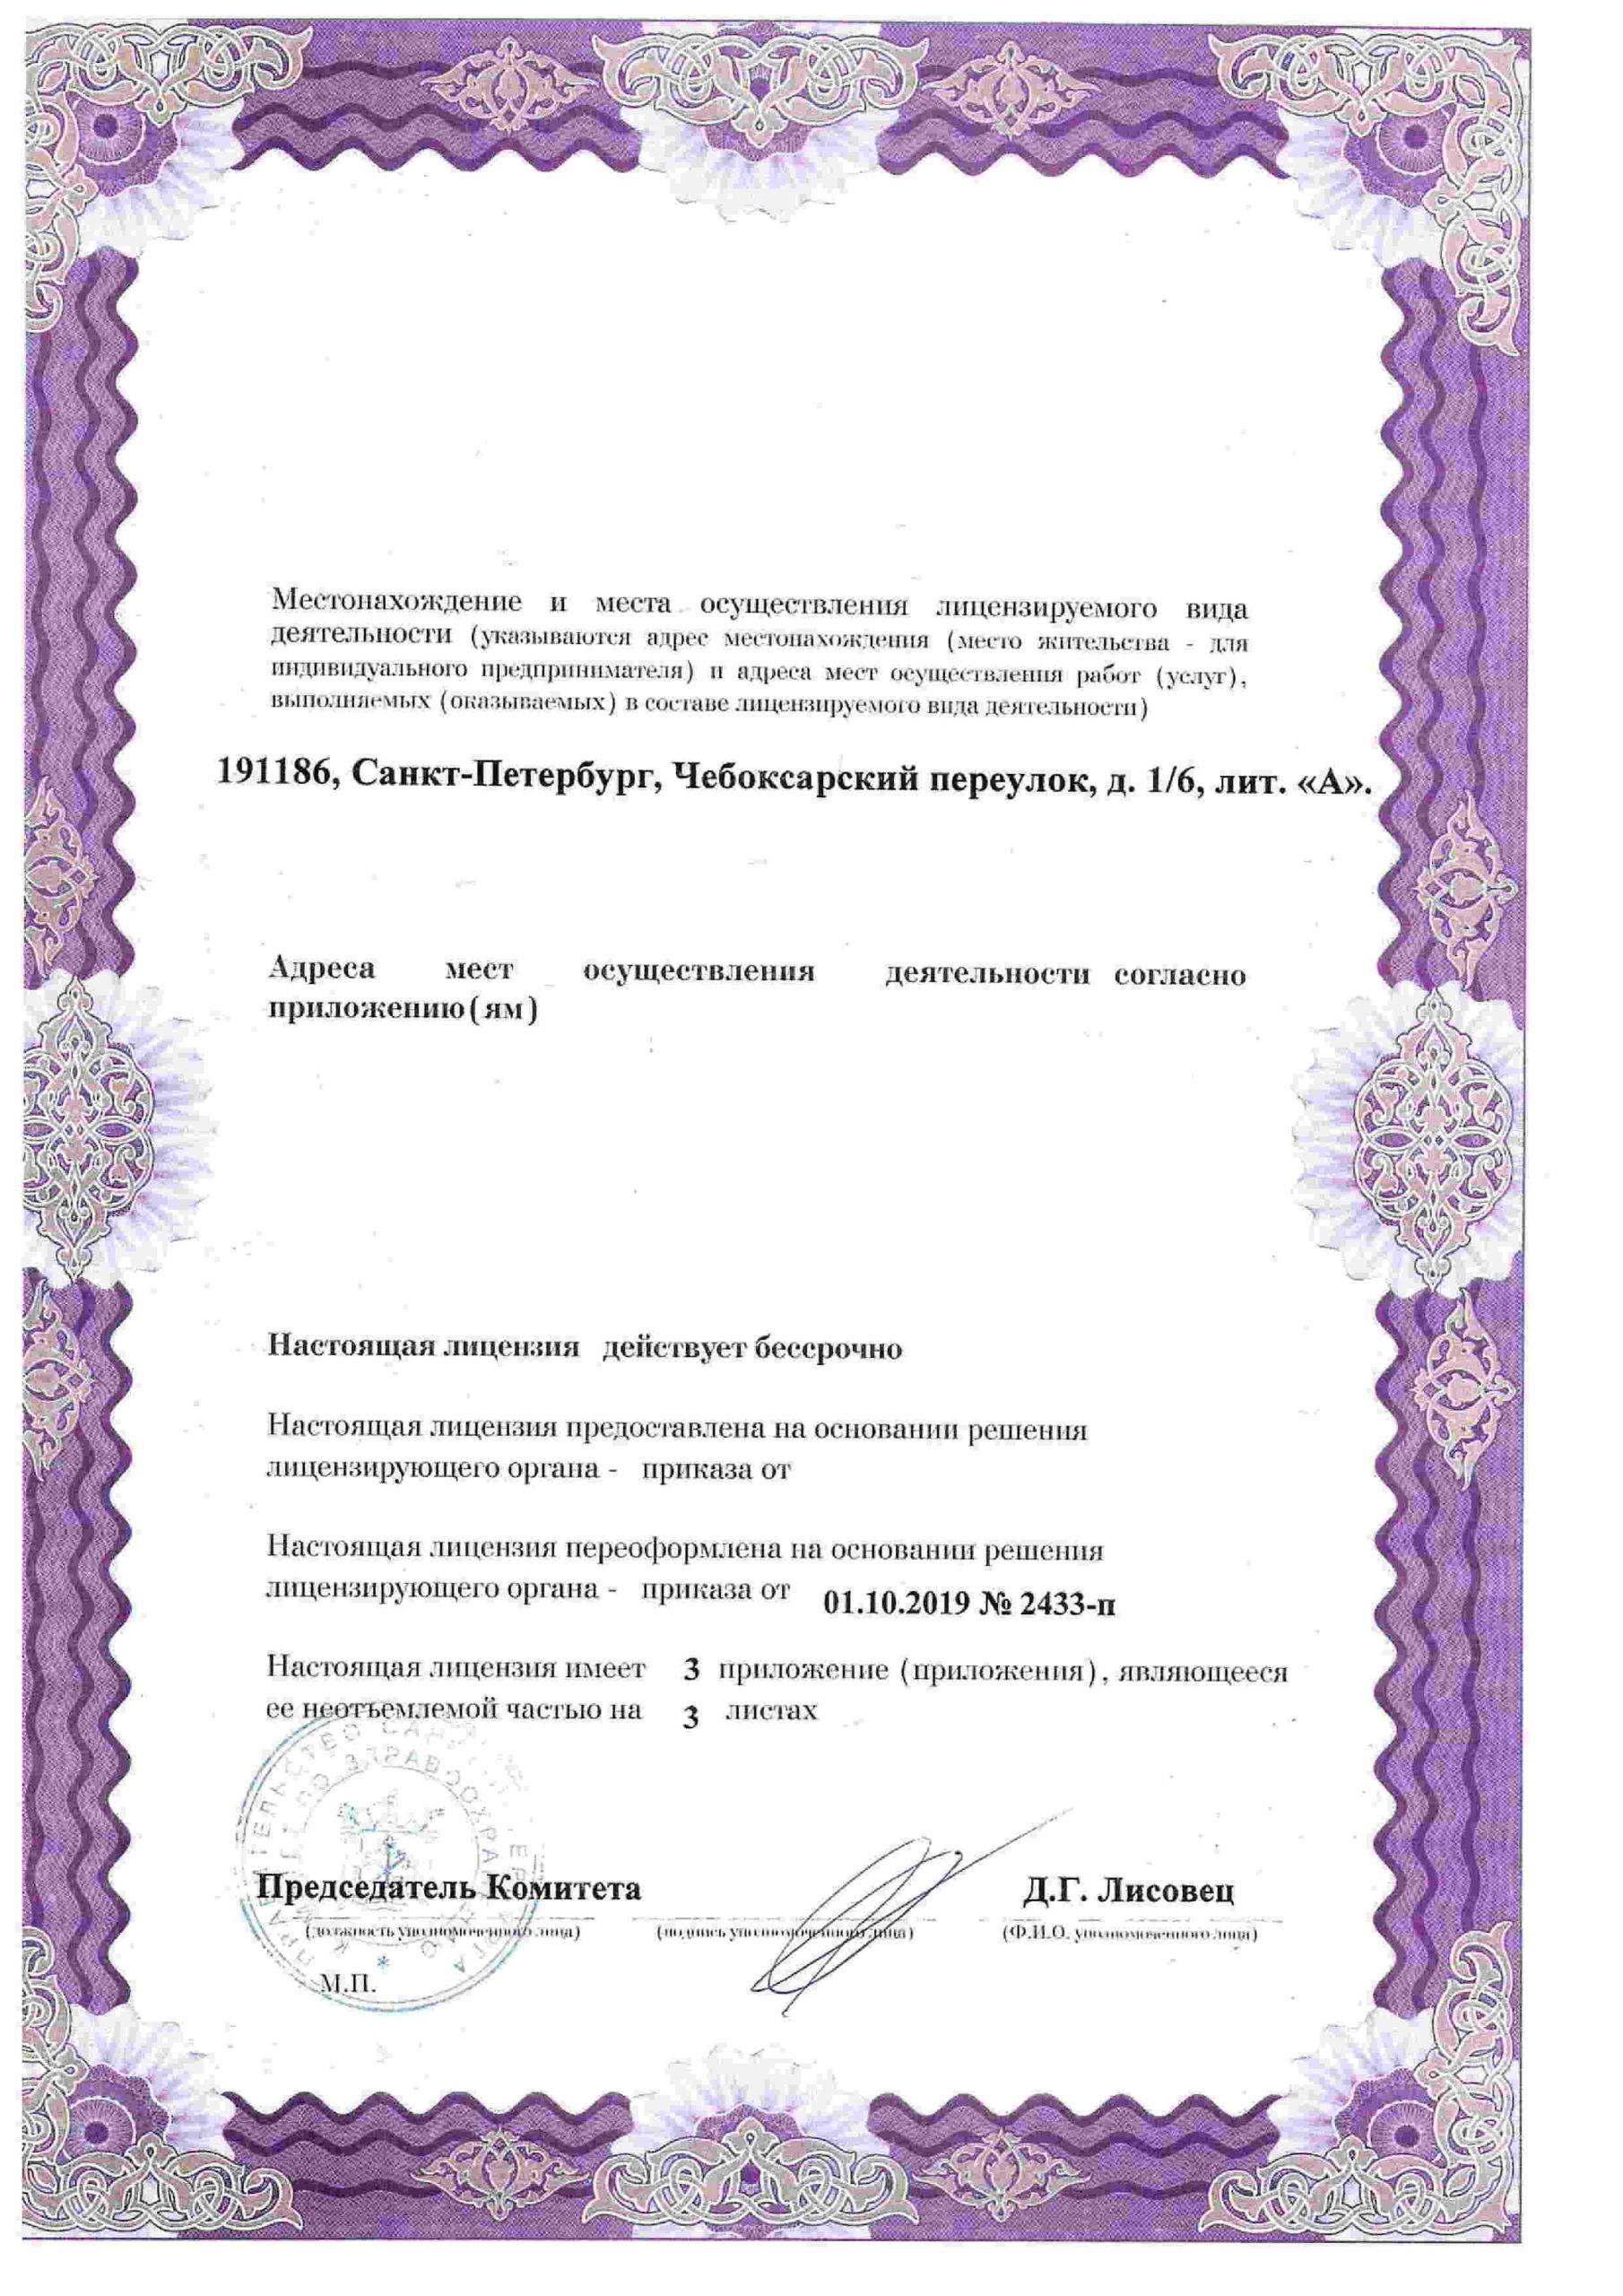 Международный медицинский центр СОГАЗ корпоратив лицензия №2